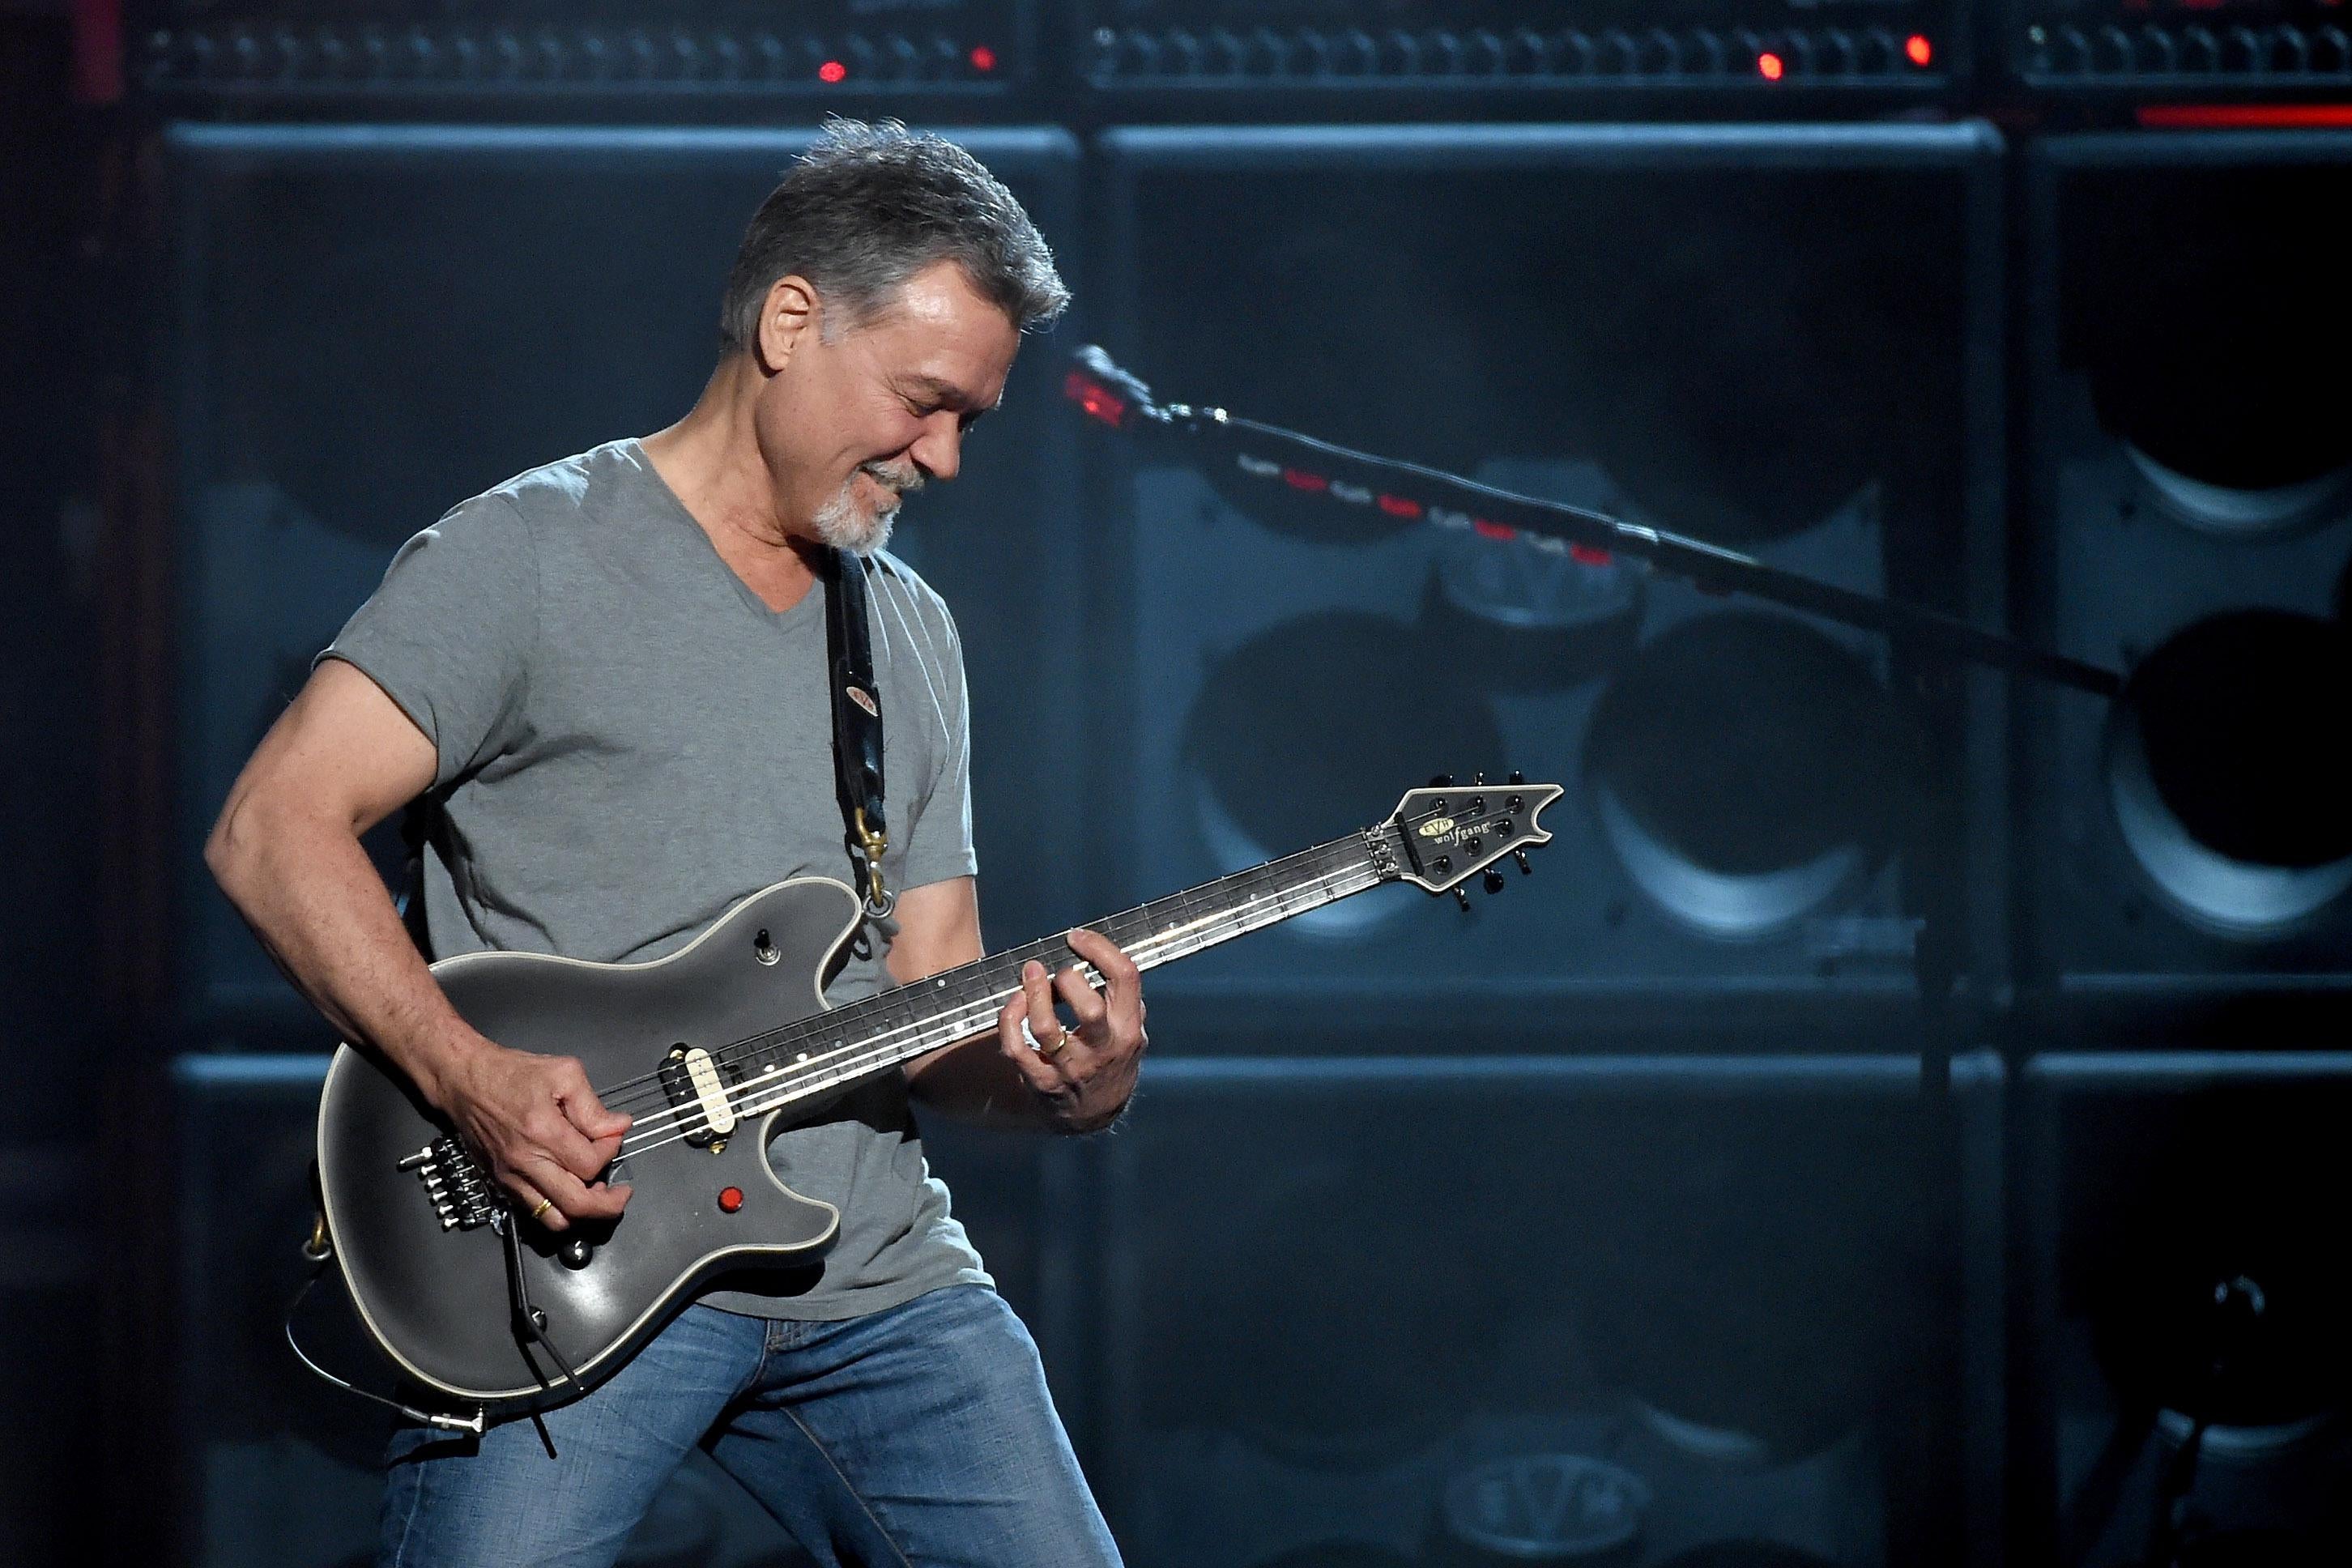 Guitarist Eddie Van Halen playing a black guitar onstage in Las Vegas.